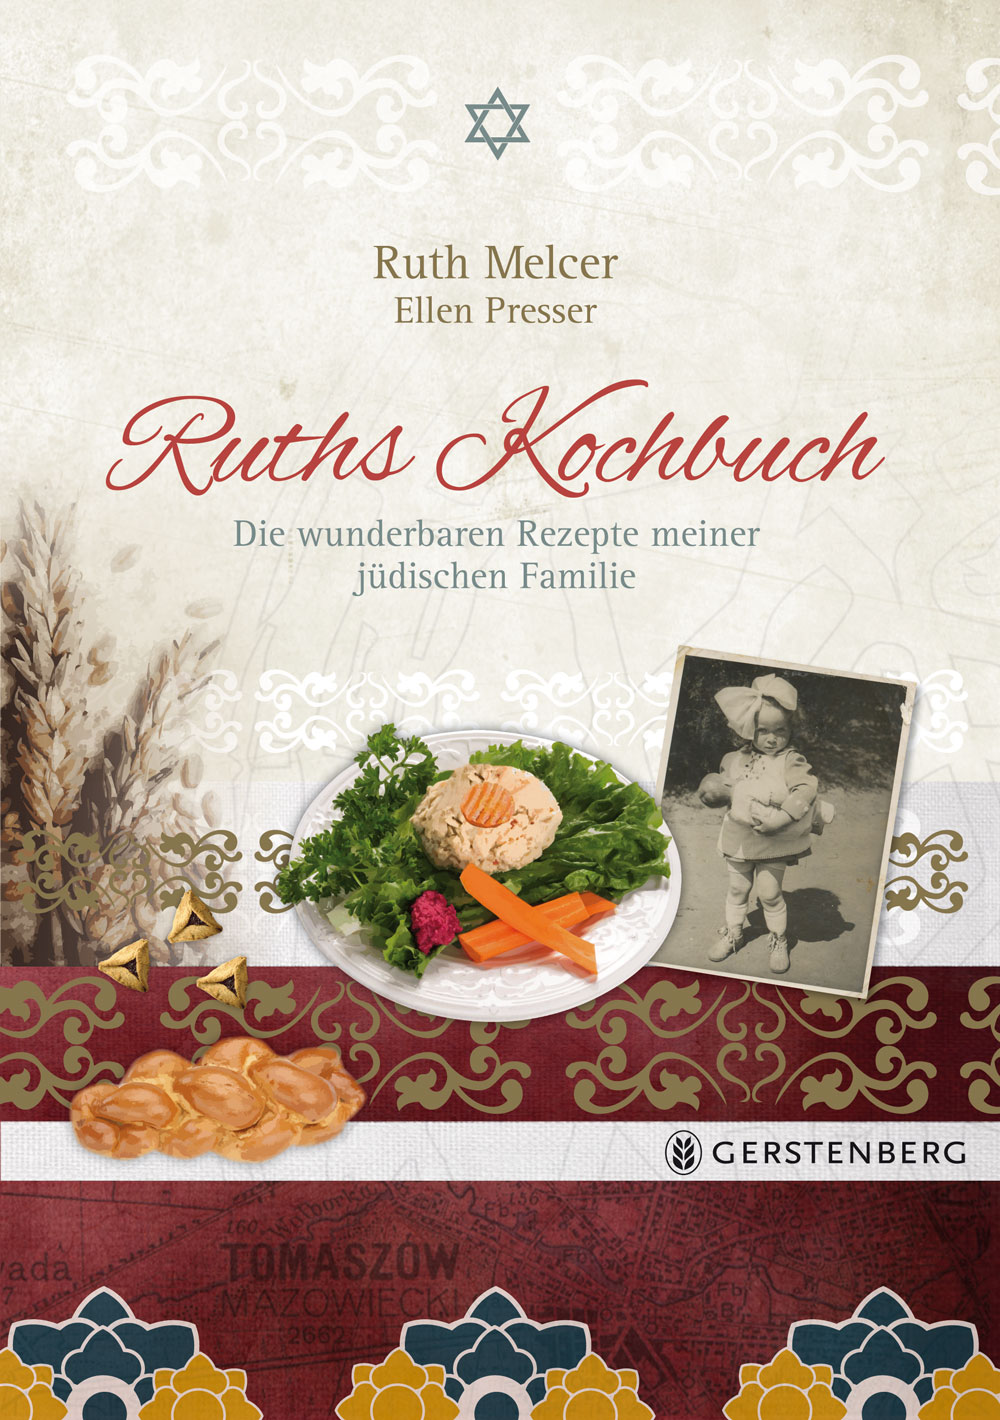 Ruth Melcer, Ellen Presser, Ruths Kochbuch